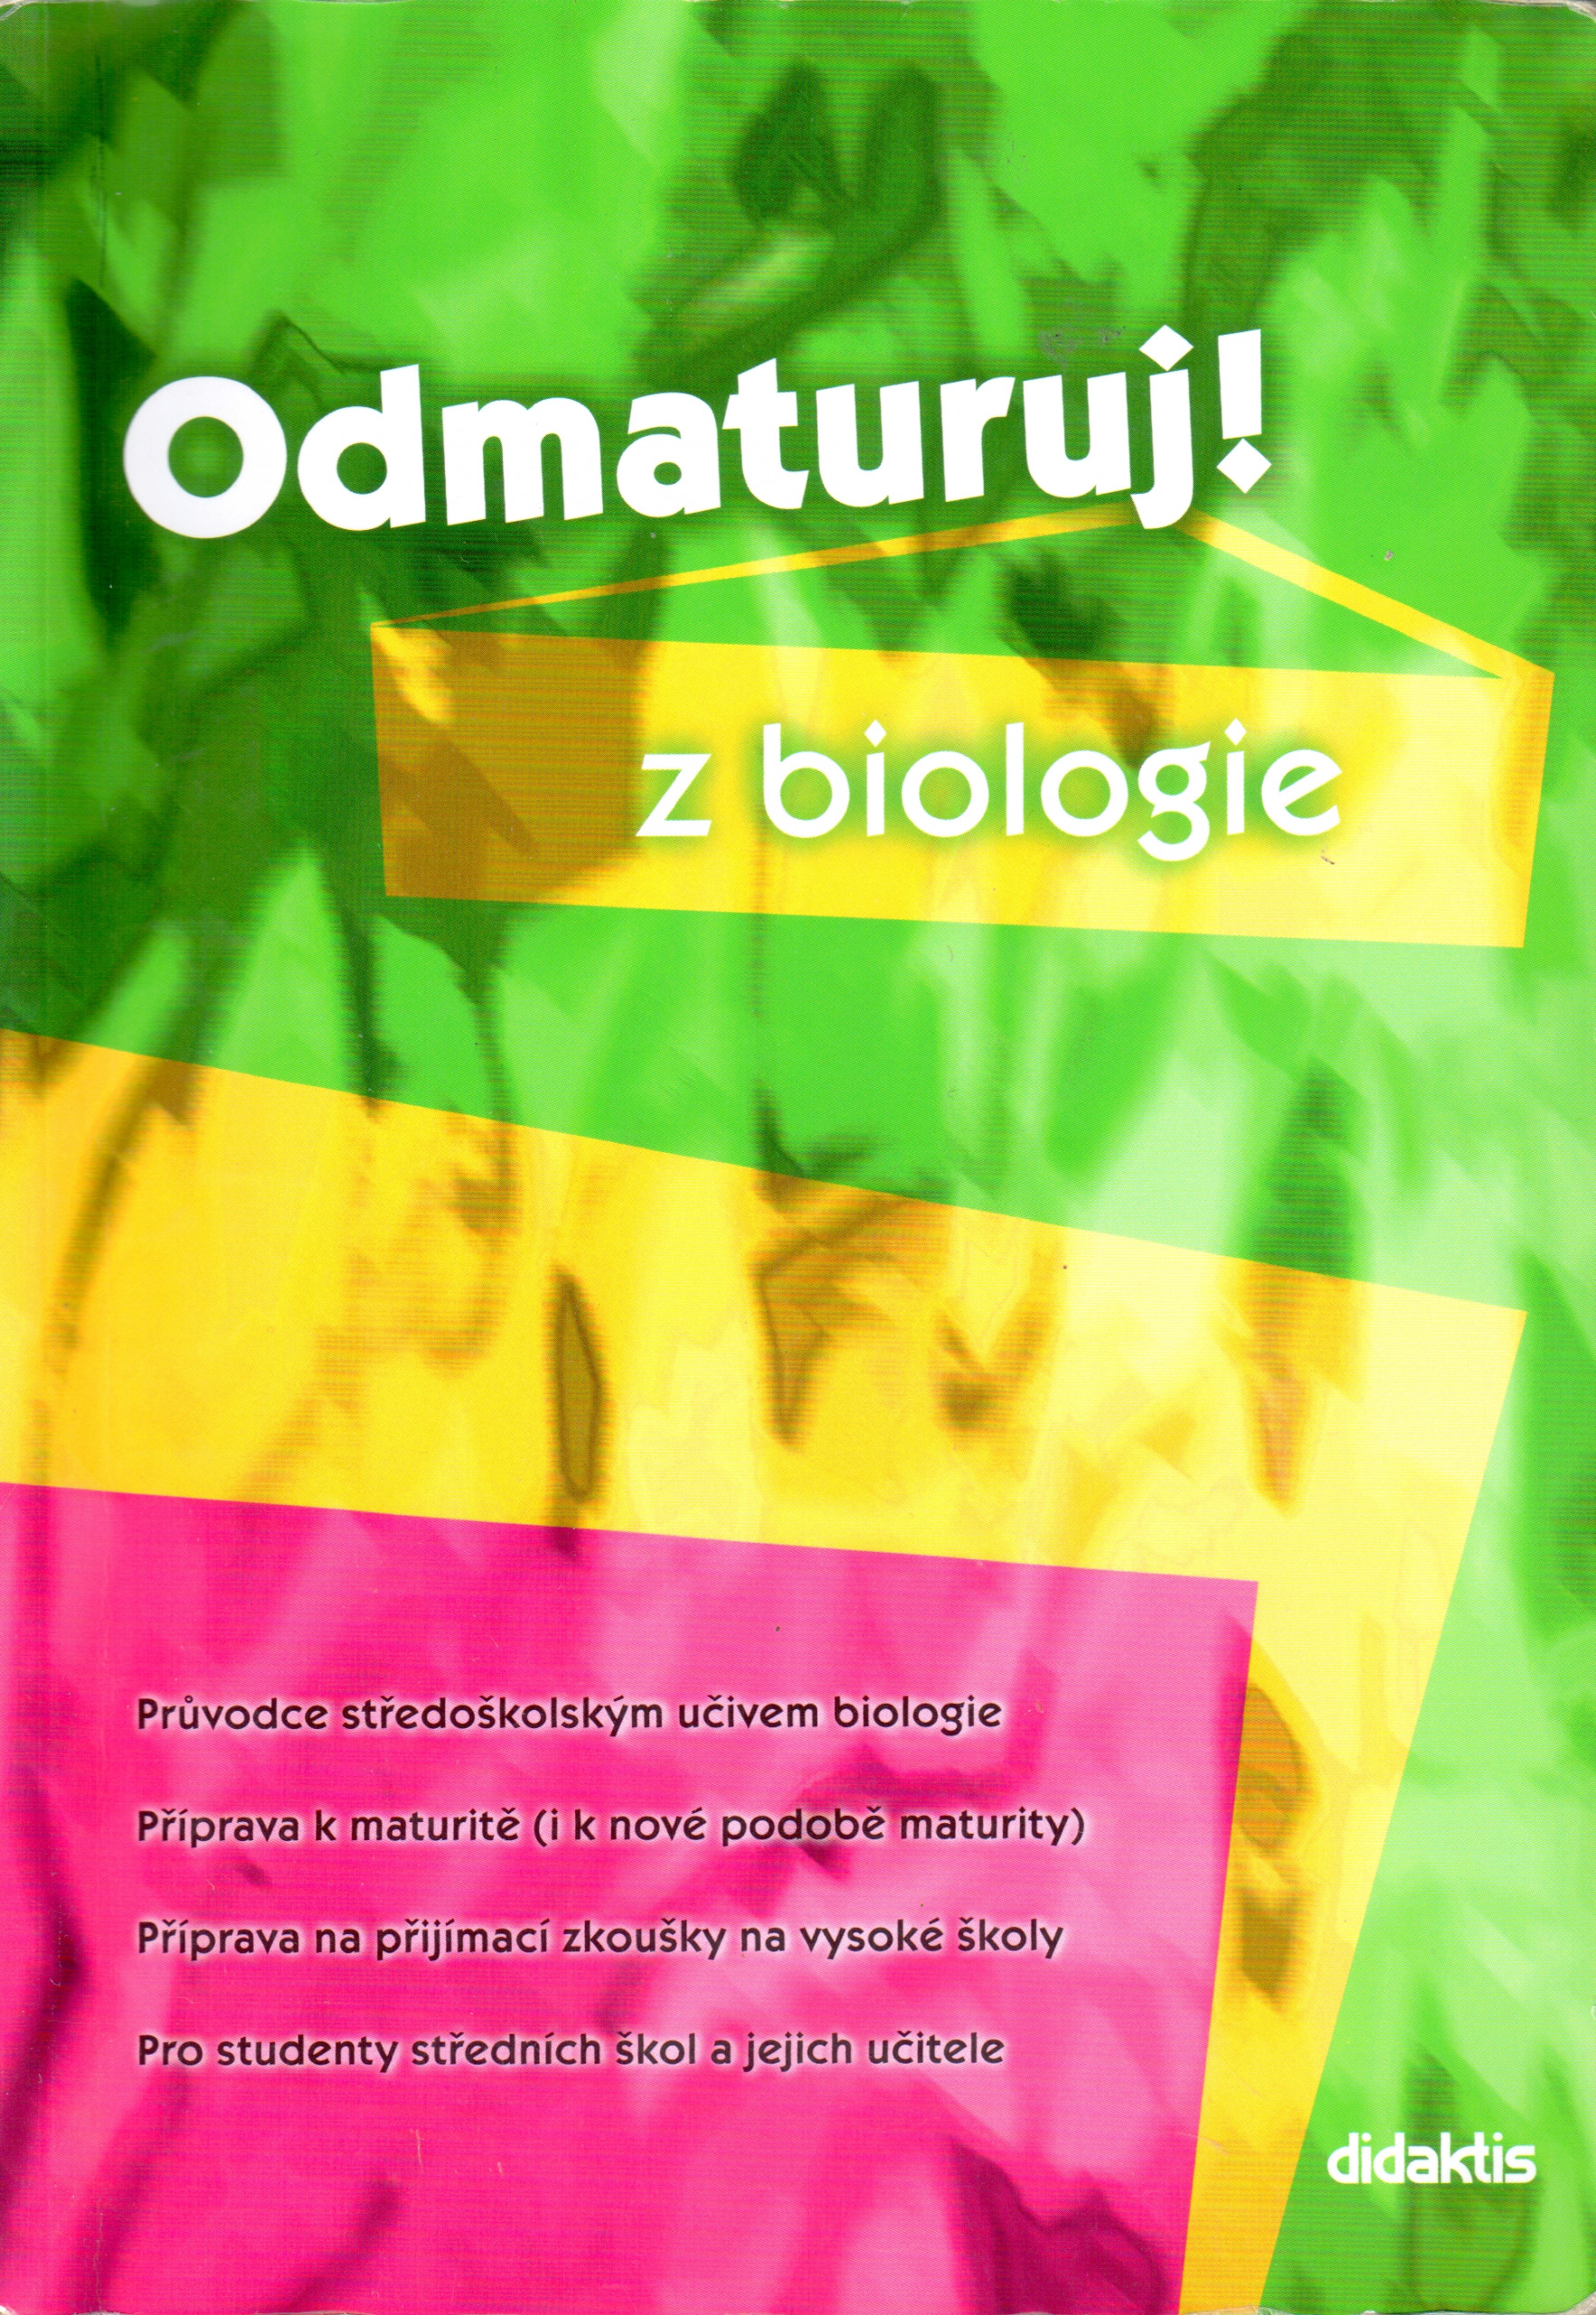 Odmaturuj! z biologie - Náhled učebnice